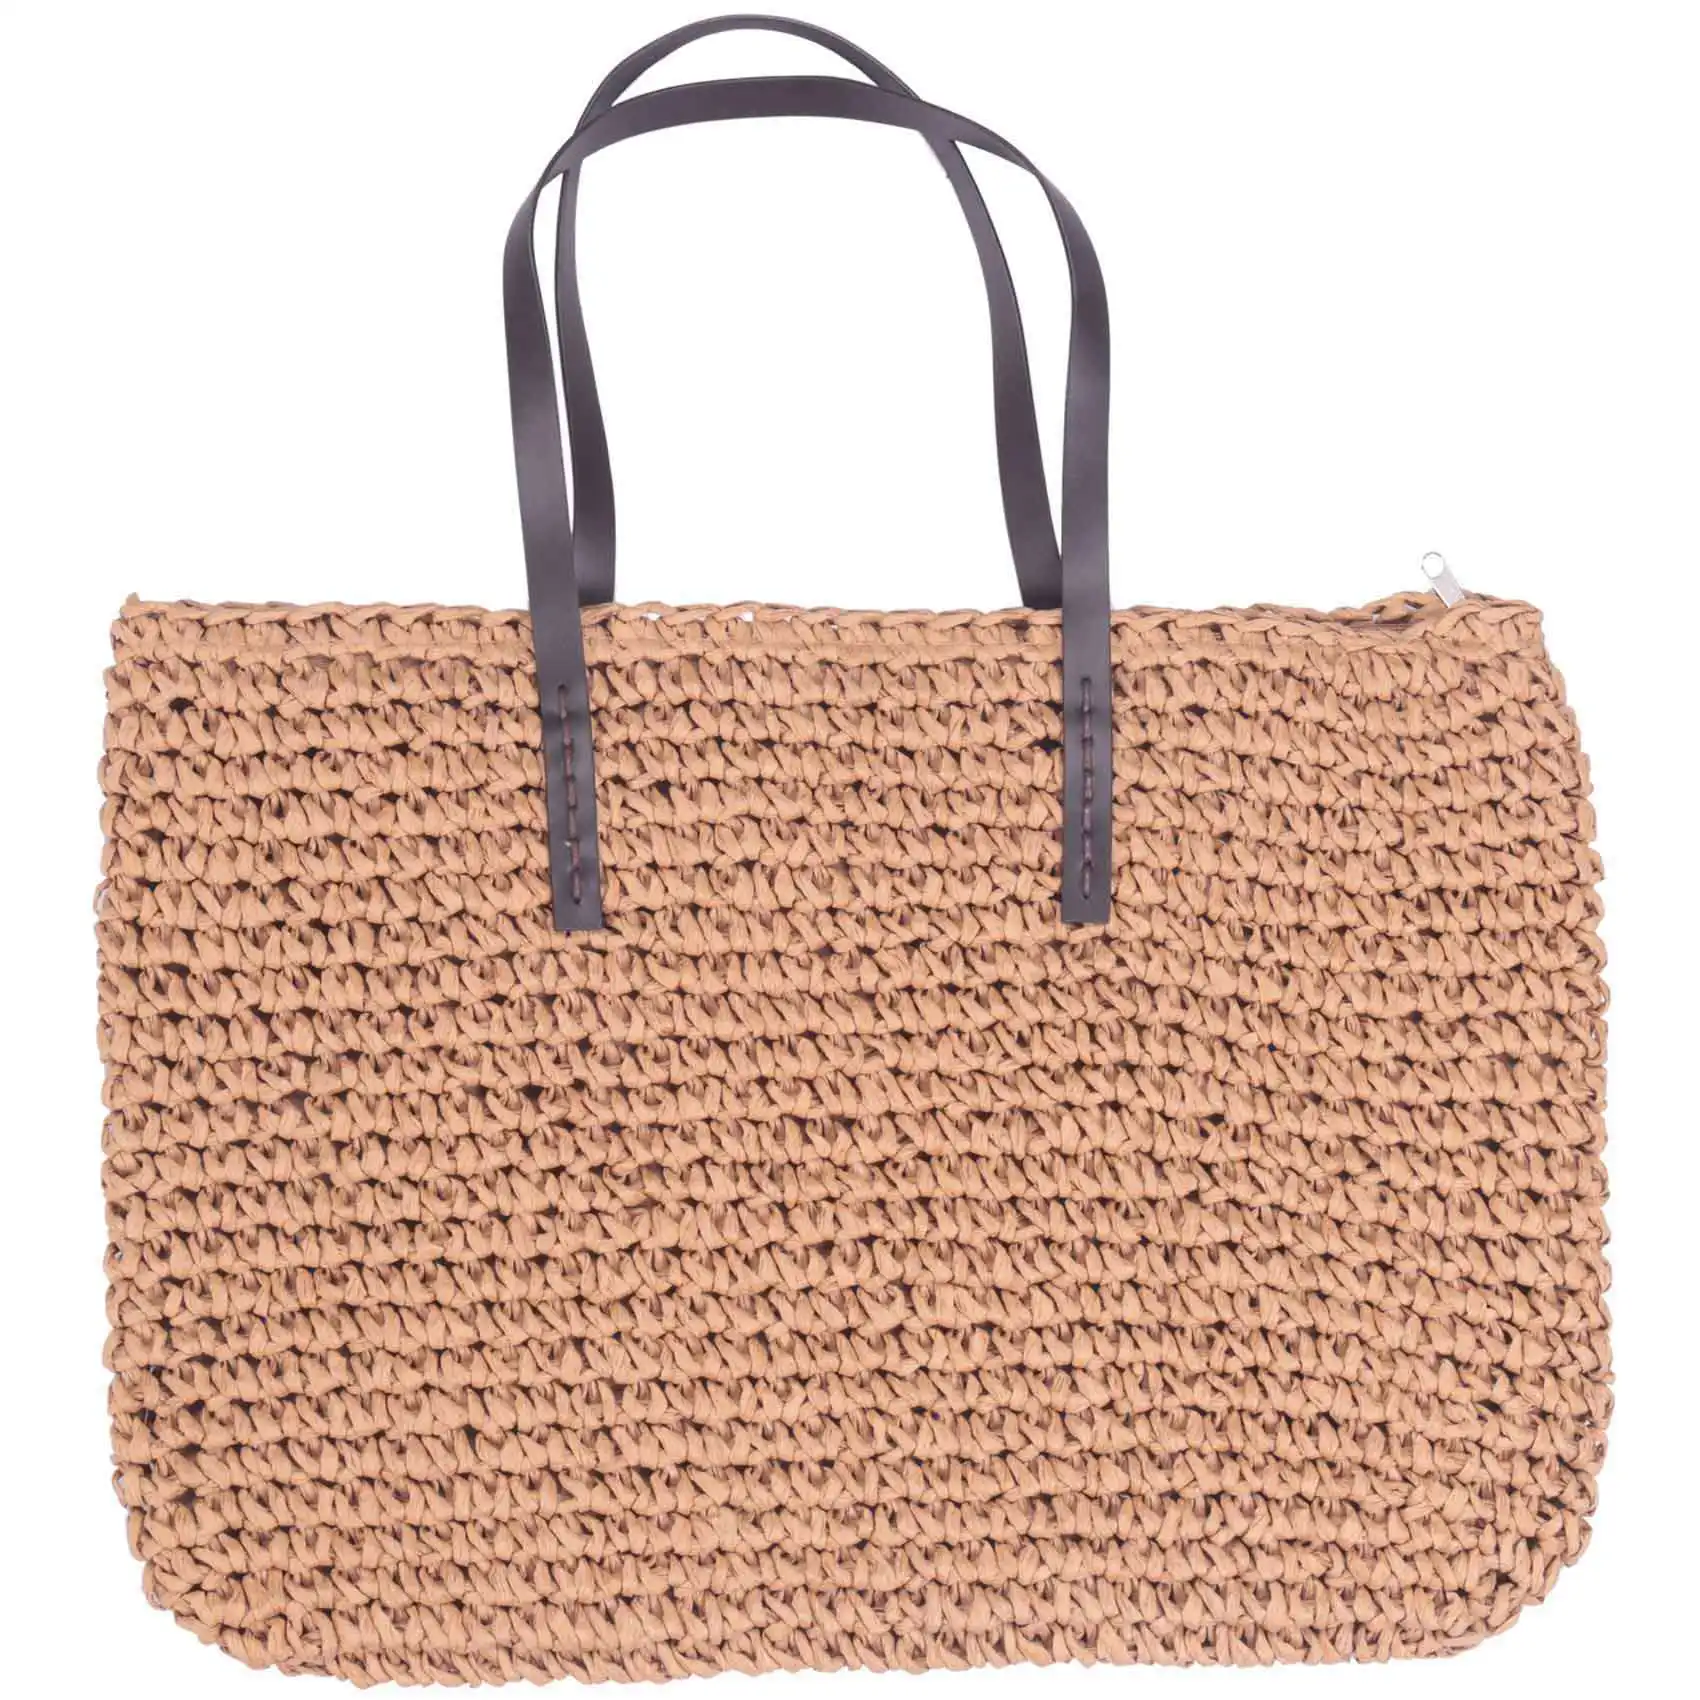 

Hot Straw Bag Women Handbag Bohemia Beach Bags Handmade Wicker Summer Tote Bags Rattan Shoulder Bags(Brown)